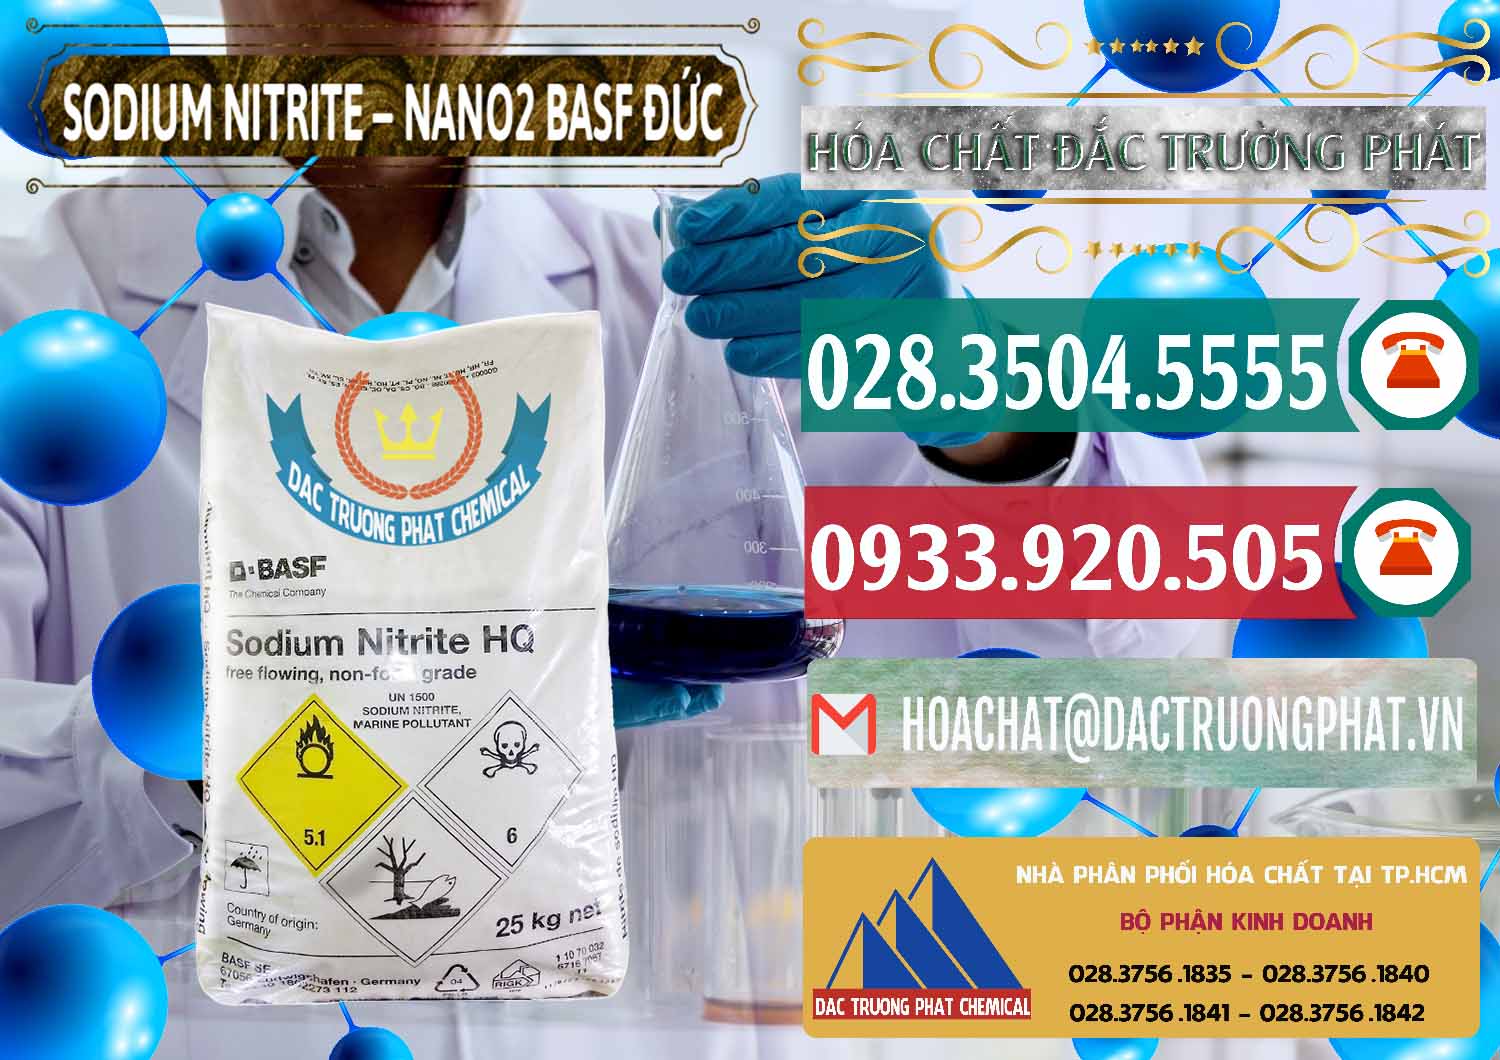 Đơn vị cung cấp & bán Sodium Nitrite - NANO2 Đức BASF Germany - 0148 - Nhà cung cấp & phân phối hóa chất tại TP.HCM - muabanhoachat.vn